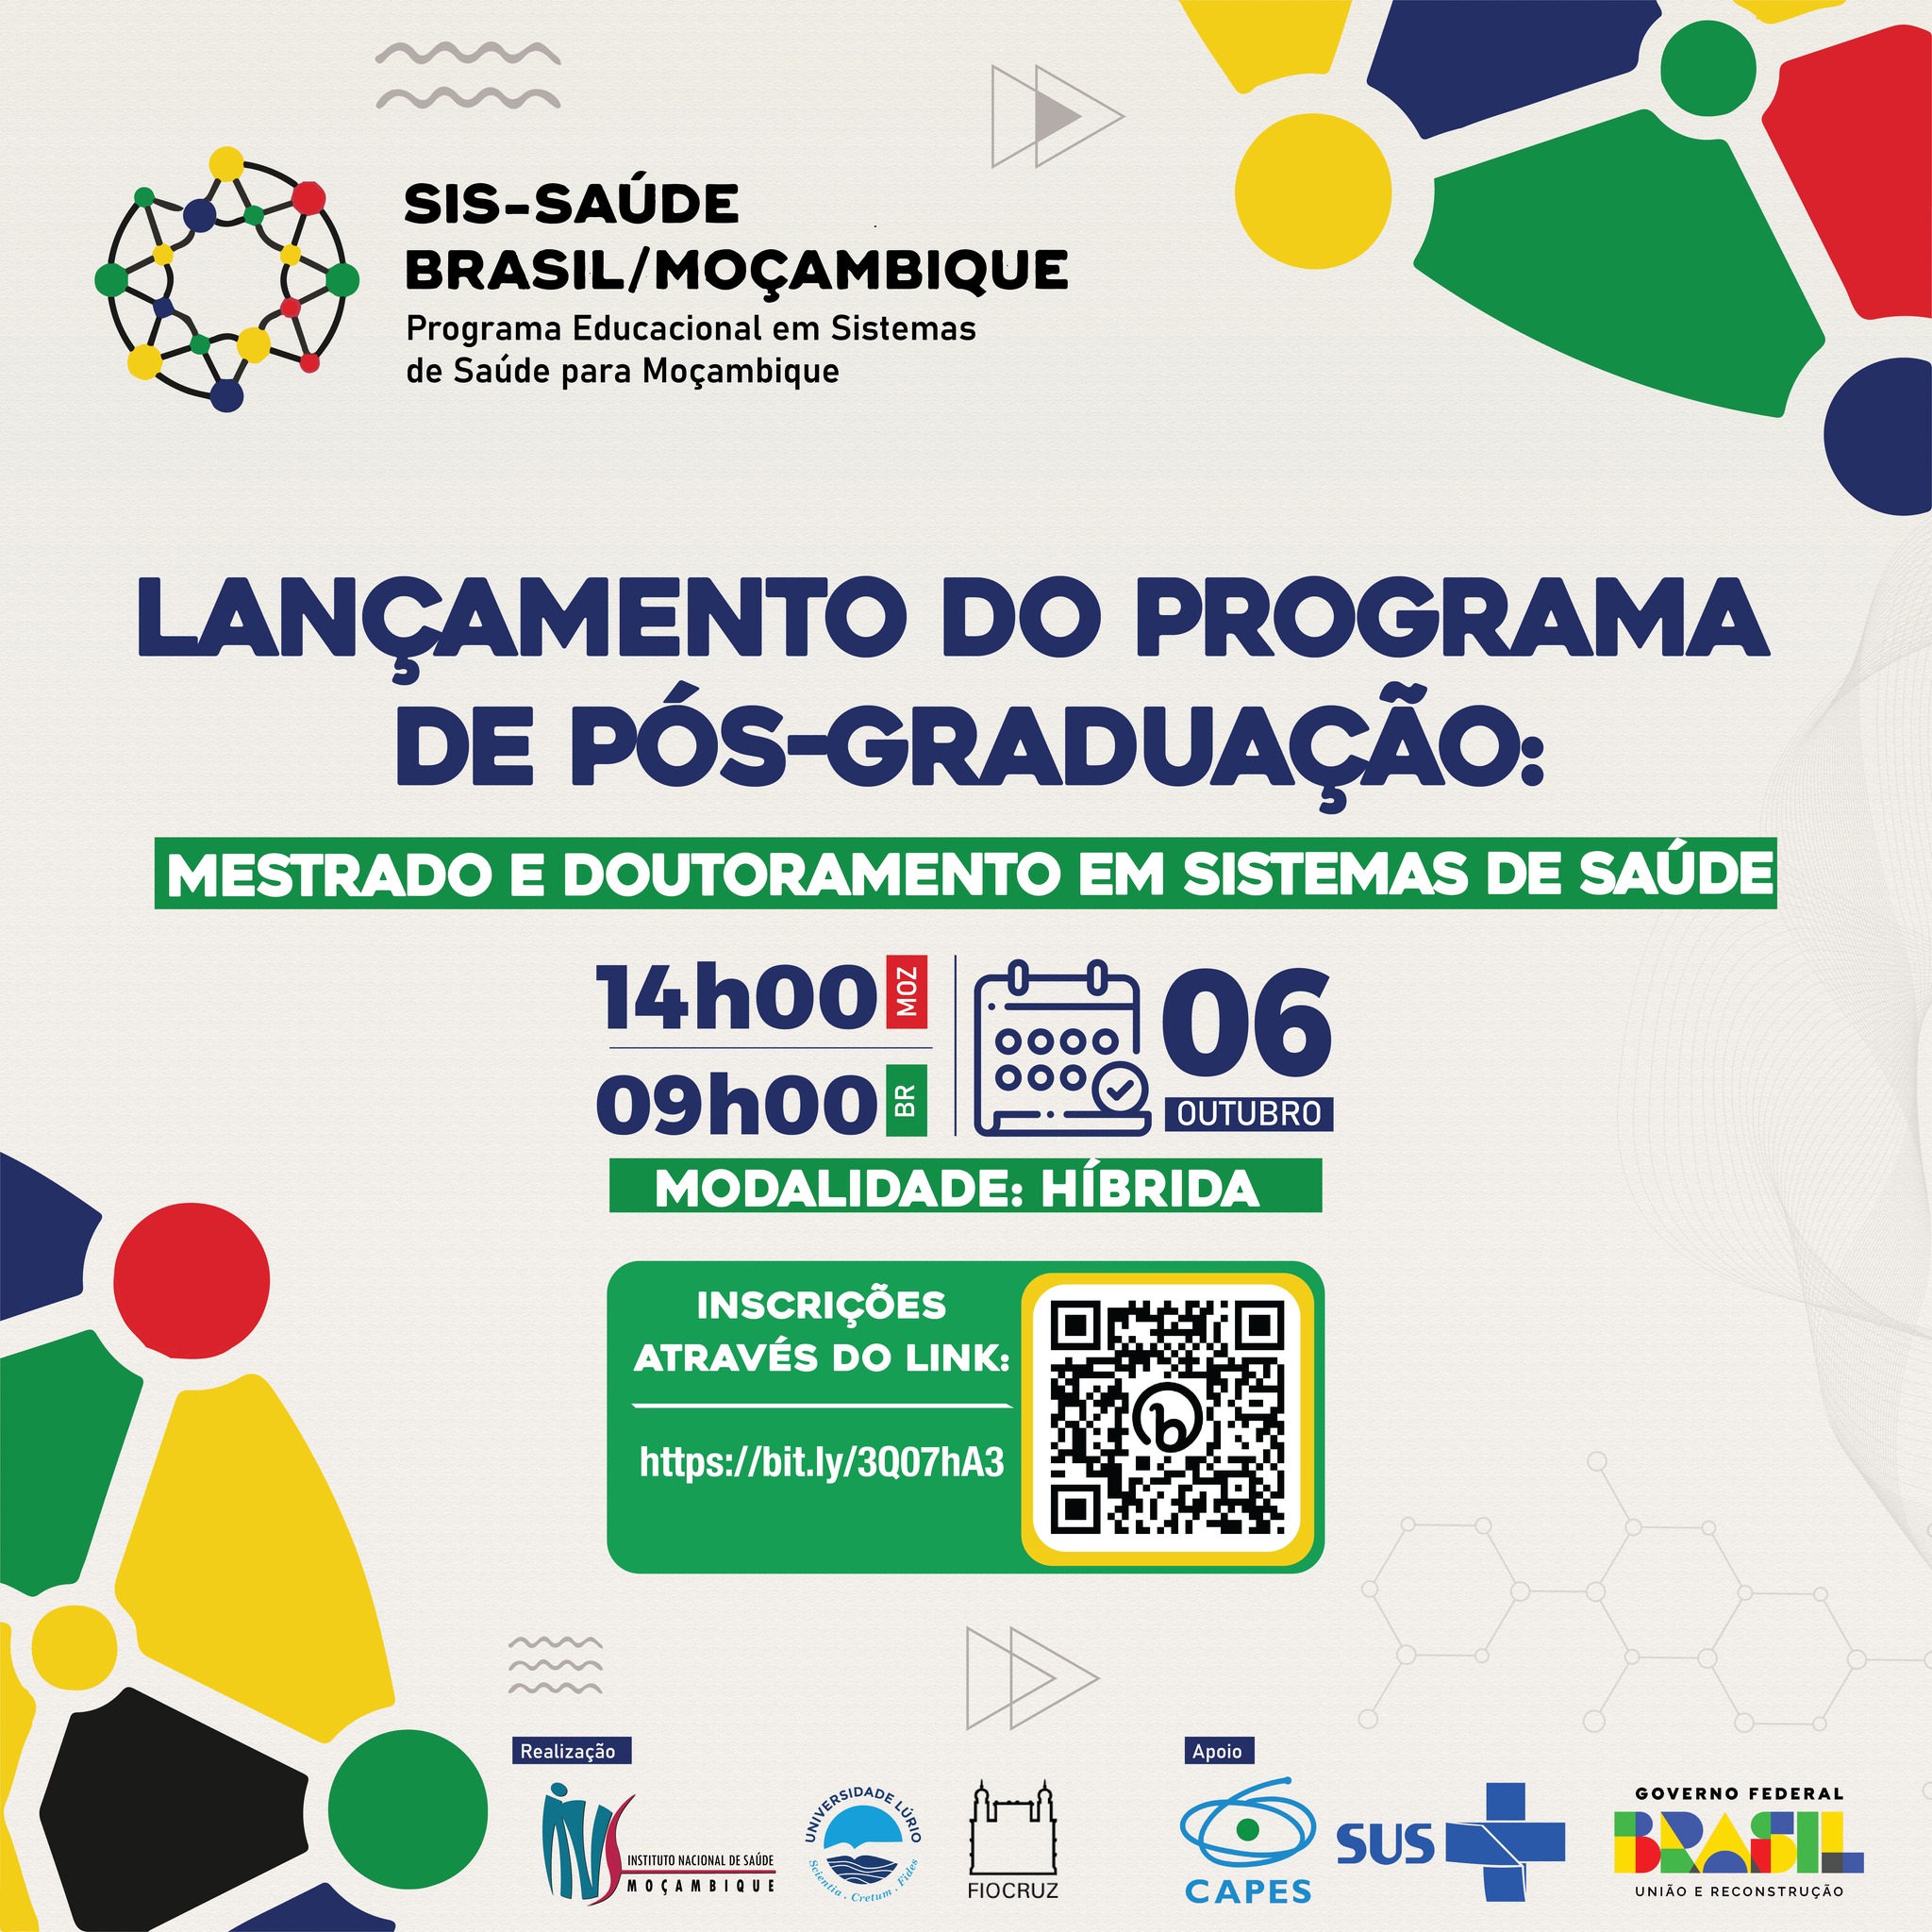 Fiocruz e Moçambique lançam SIS-Saúde: consórcio de programas de pós da Fiocruz que visa fortalecer os sistemas de saúde da região